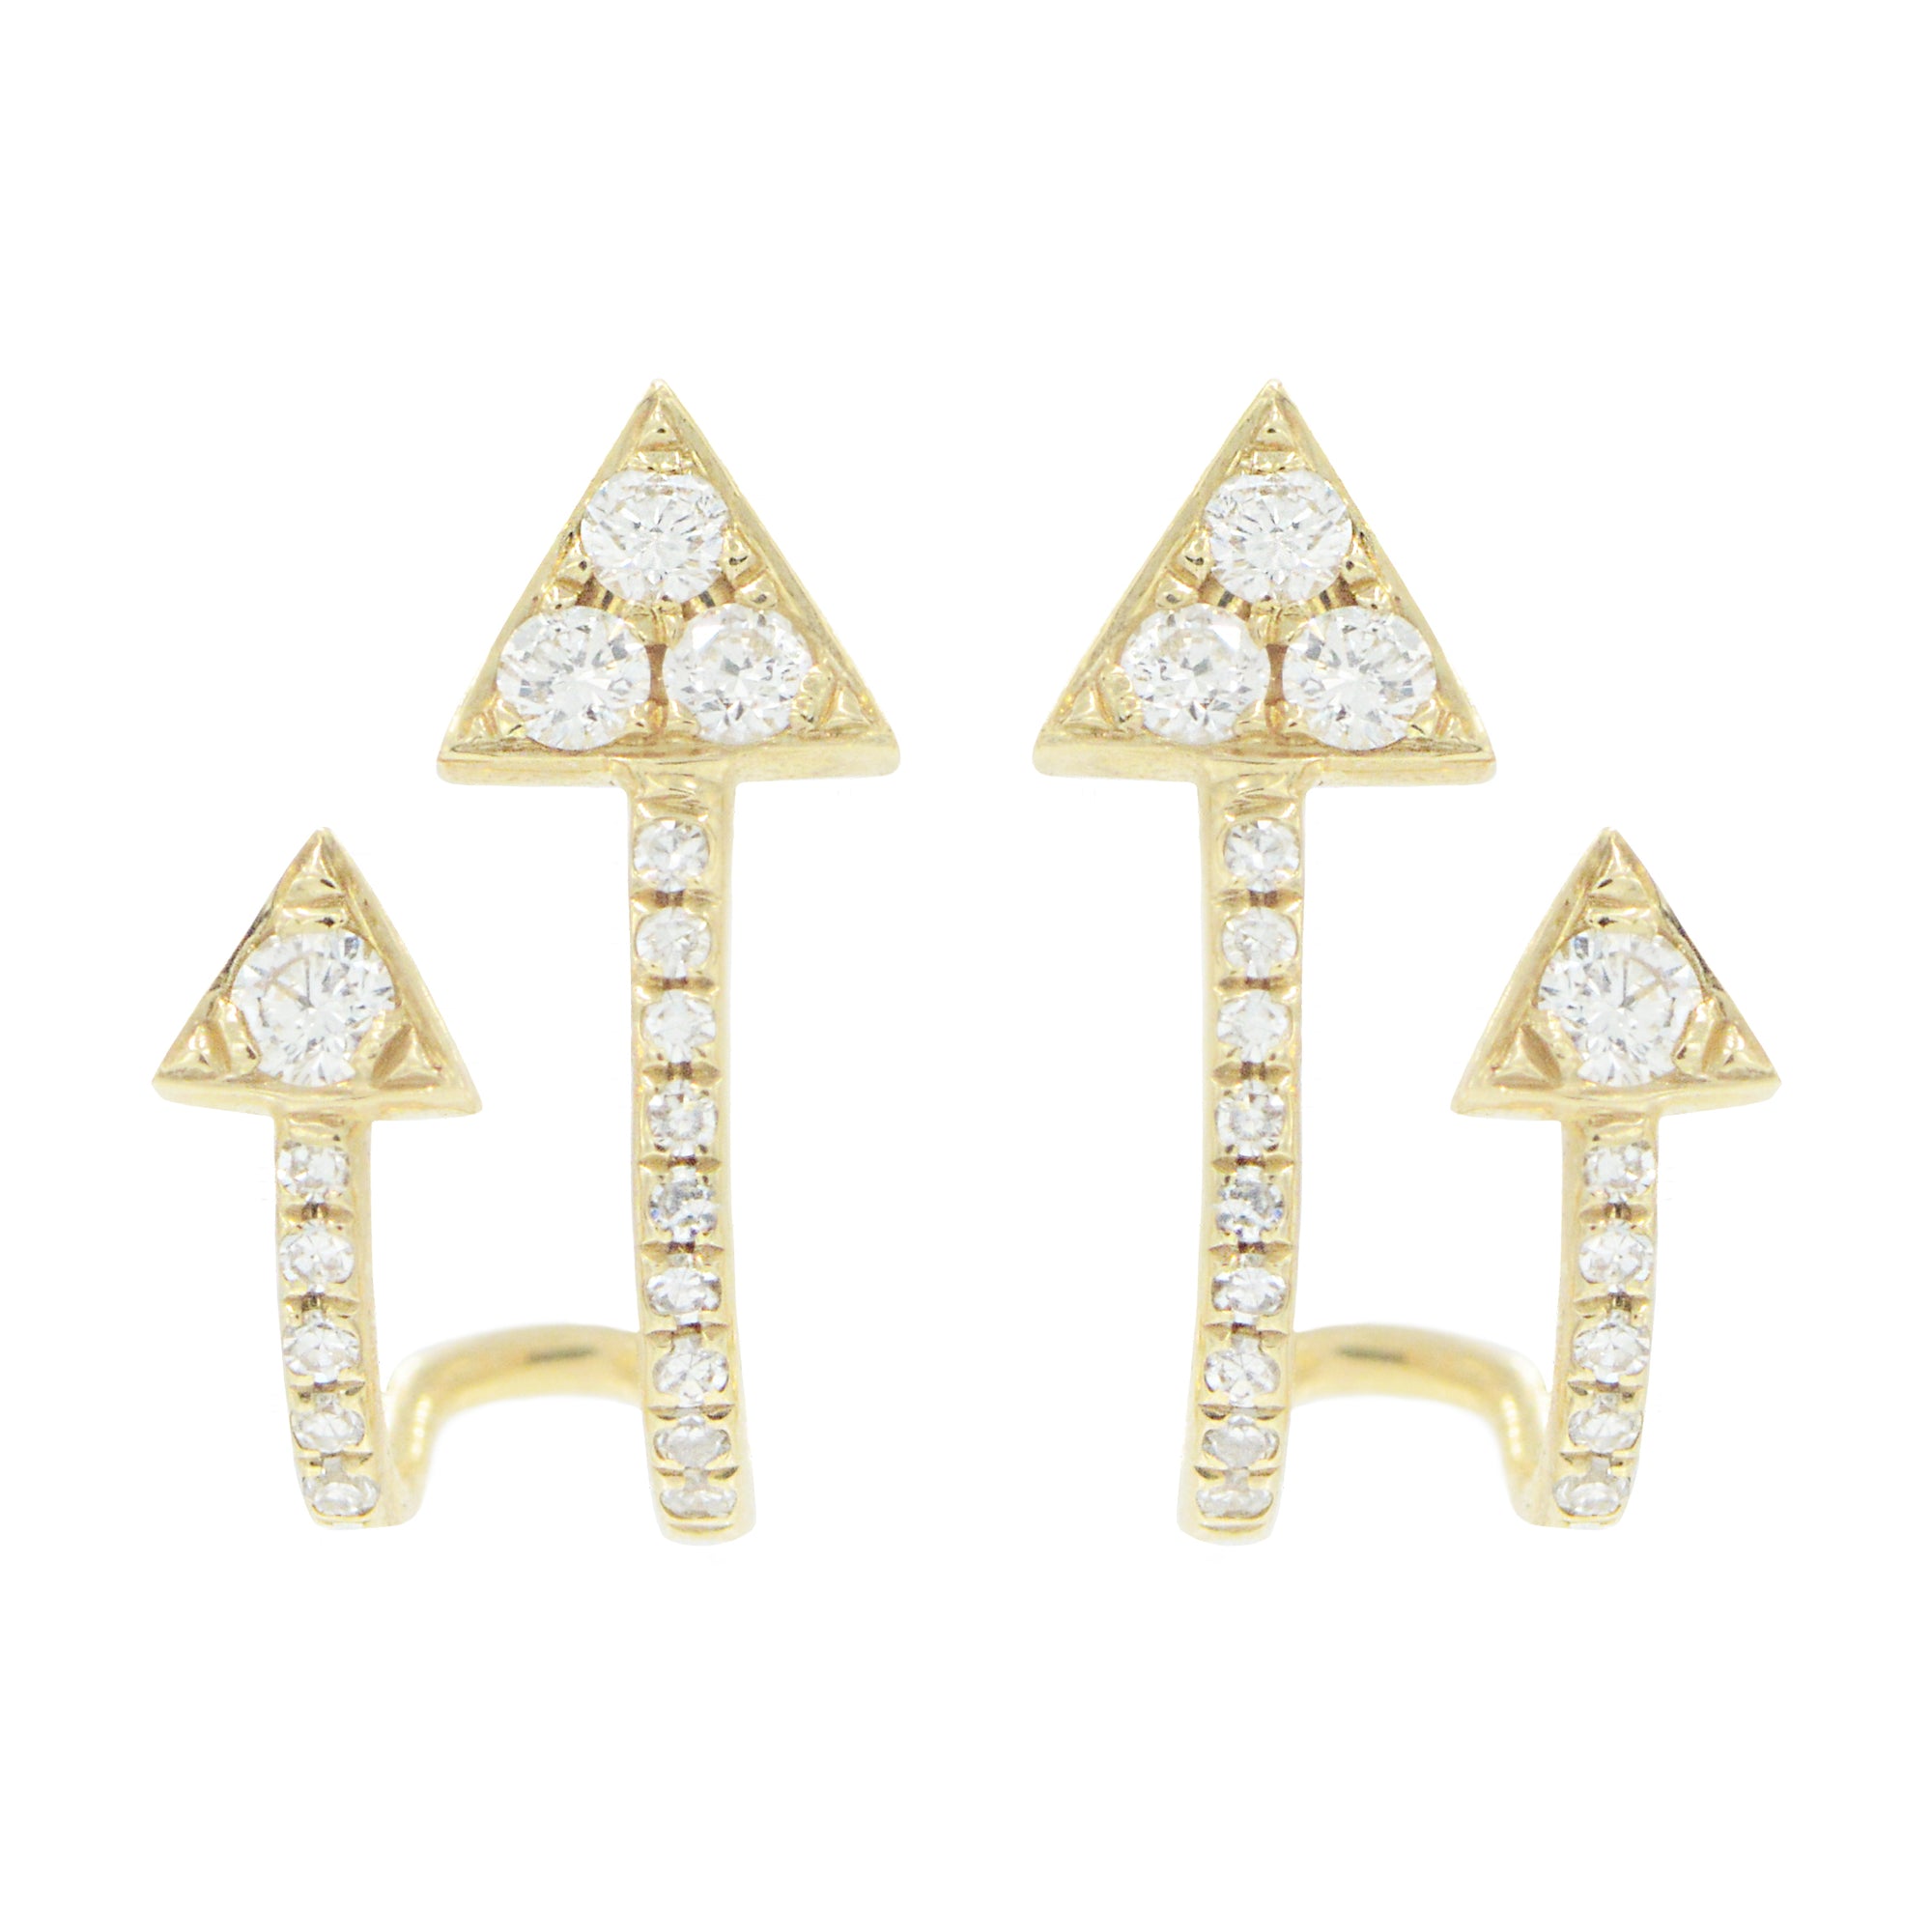 Double arrow huggie earrings with diamonds in 14k gold